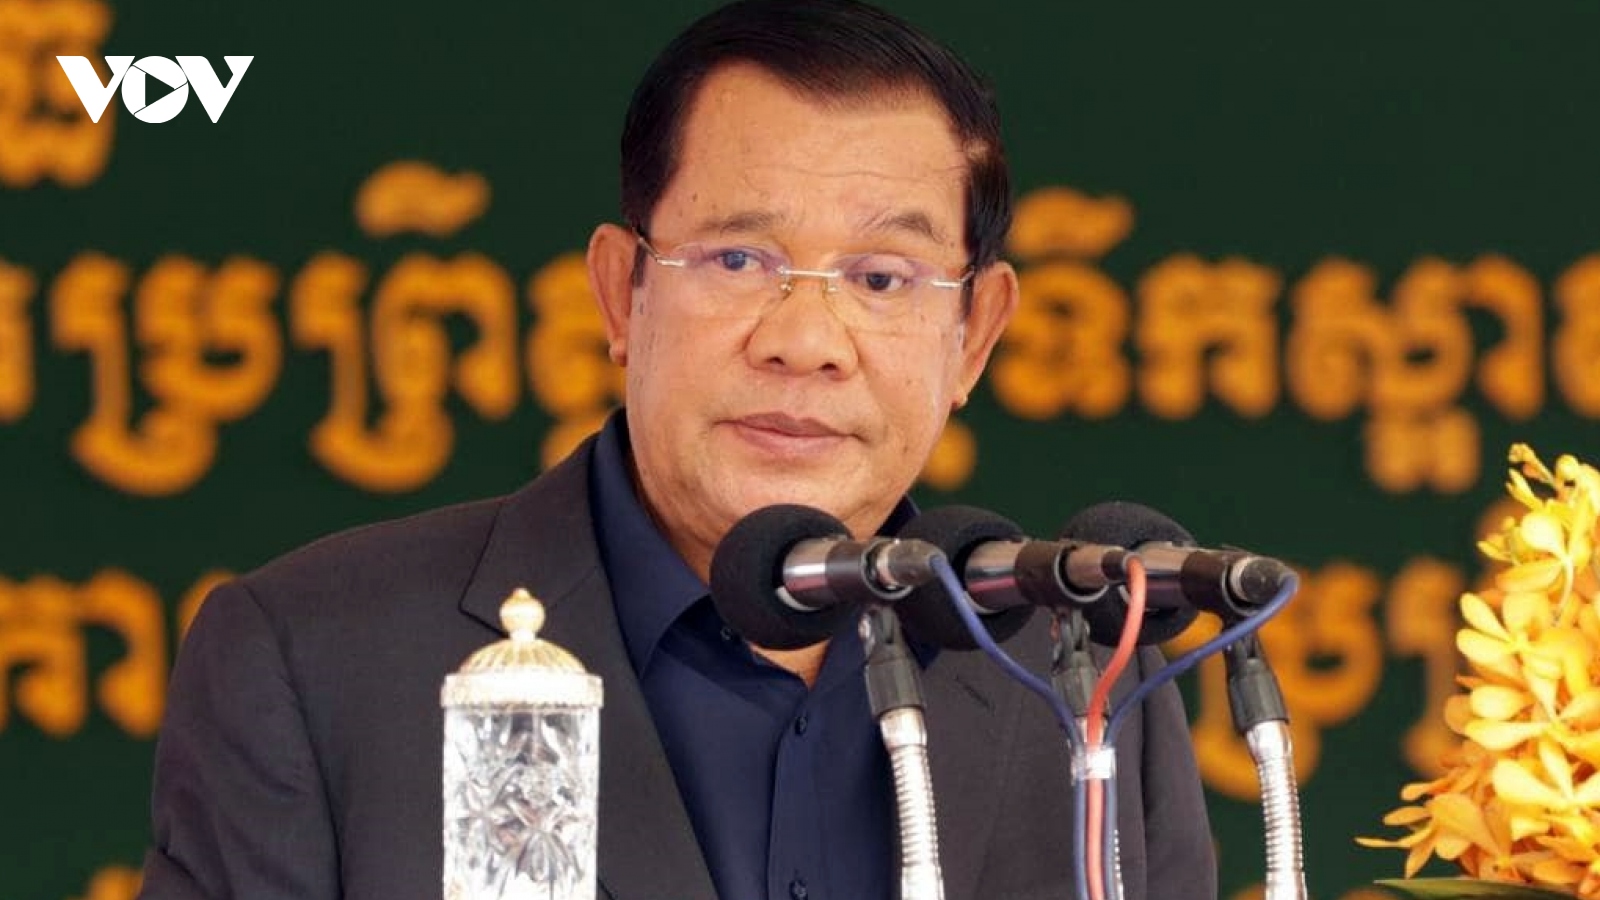 Campuchia sẽ chuẩn bị 20 triệu liều vaccine Covid-19 tiêm miễn phí cho người dân